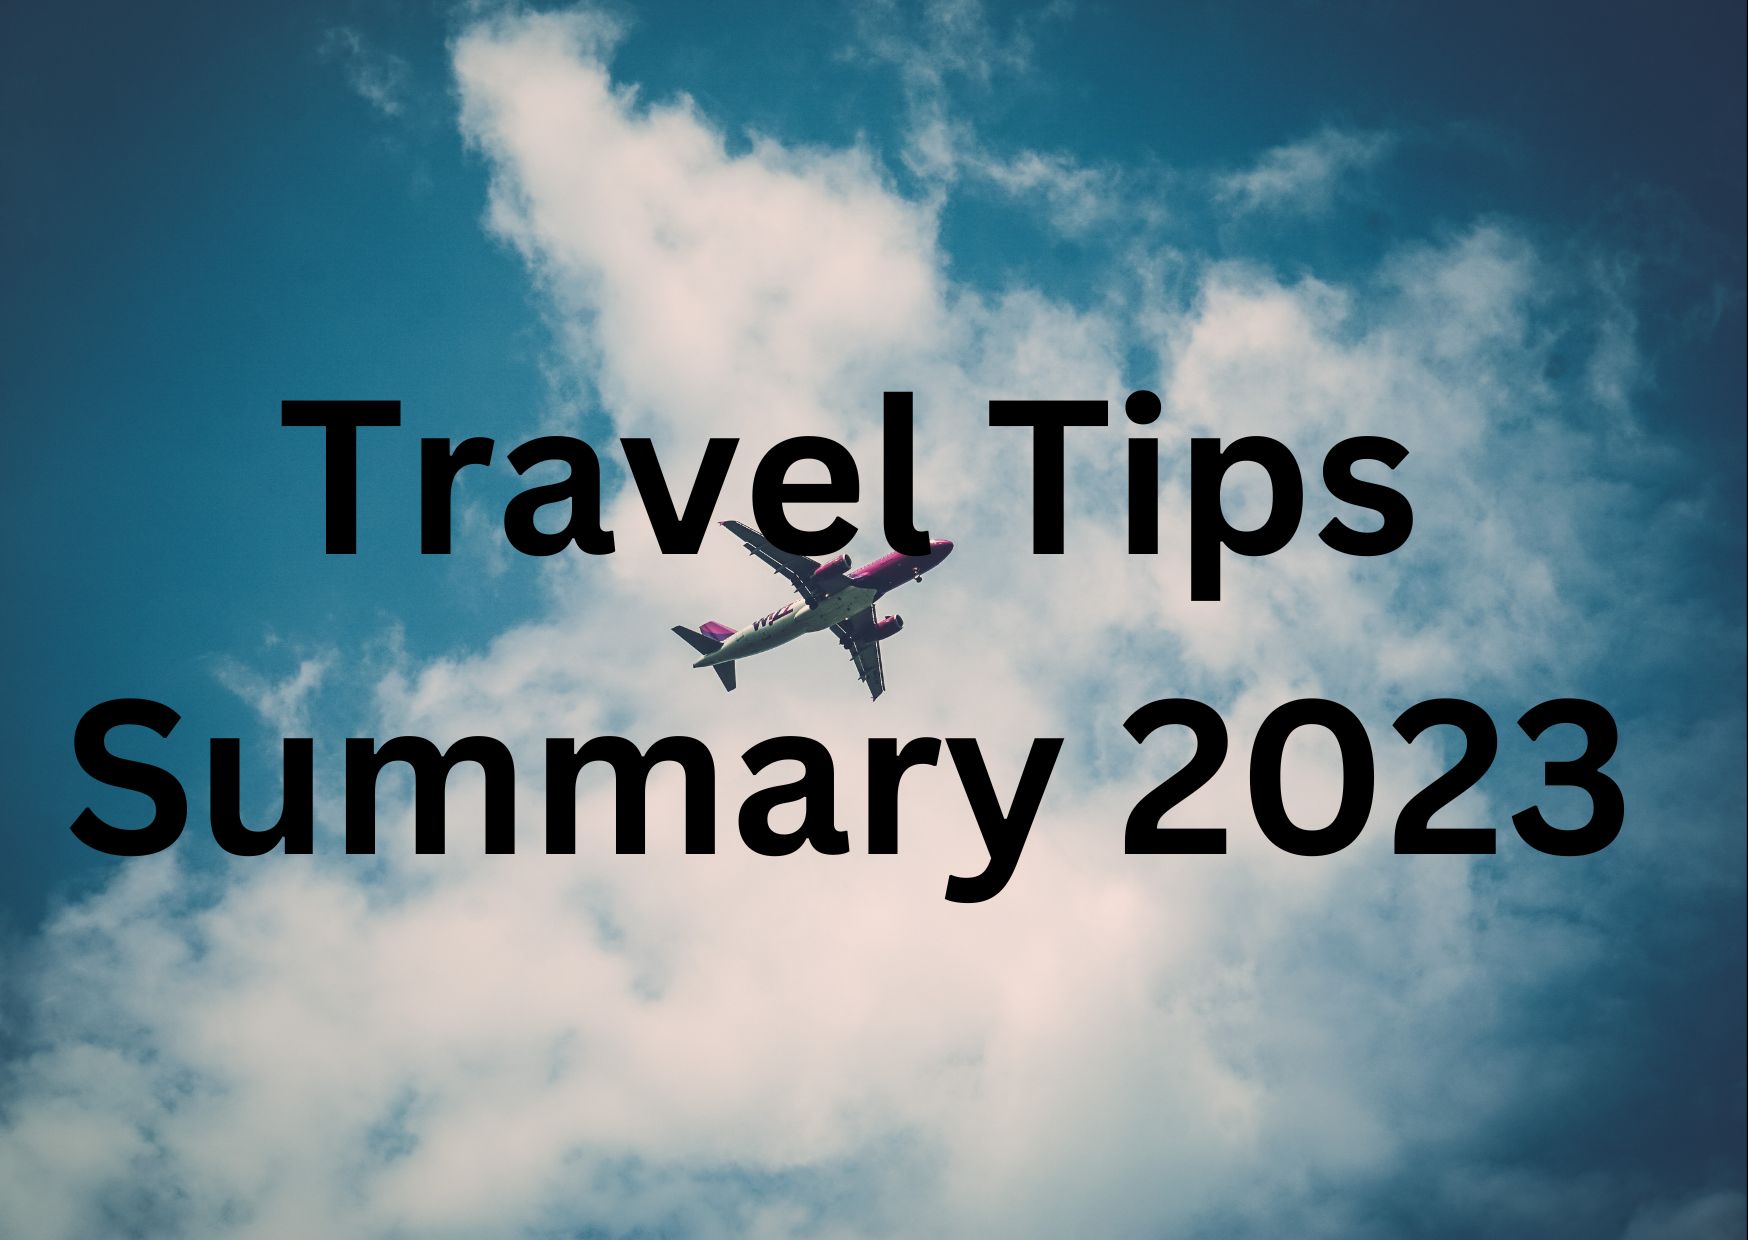 Travel Tips Summary 2023